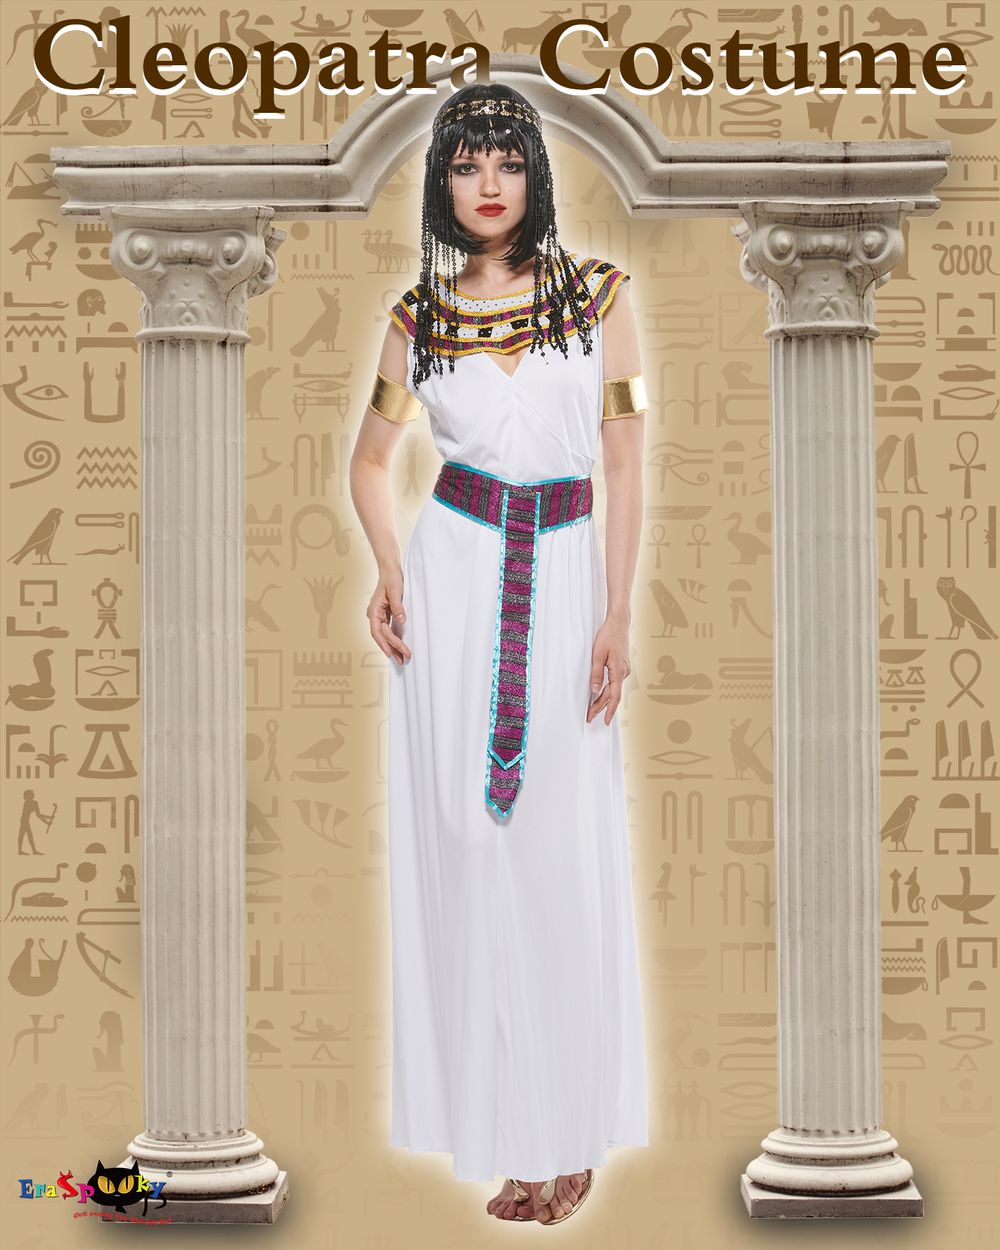 Eraspooky Cleopatra Mujer Disfraz Princesa Egipcia Disfraz